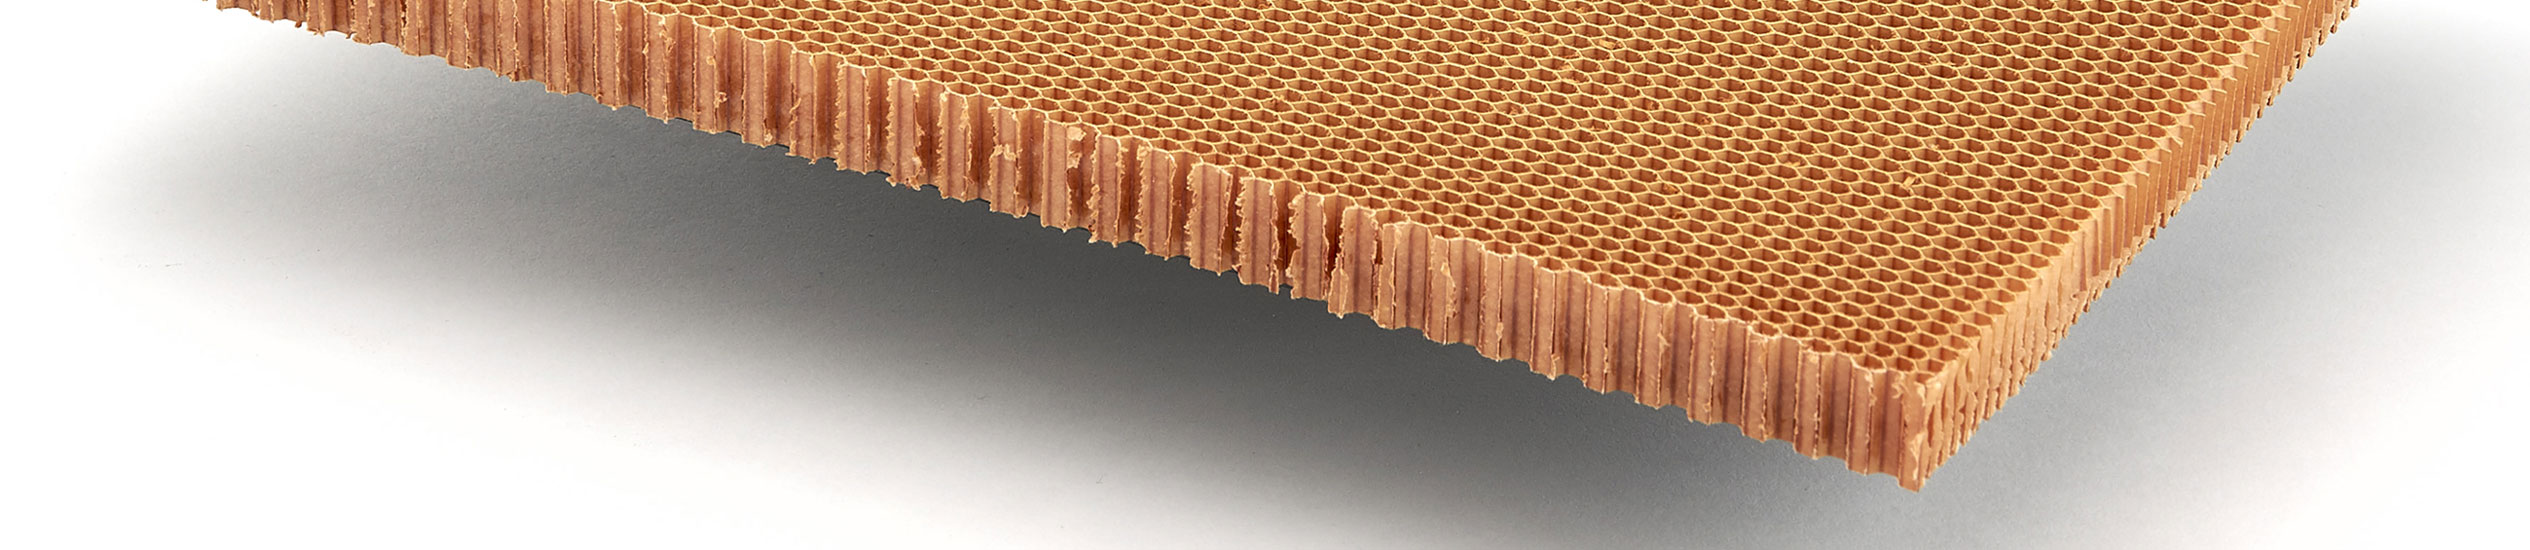 Le nid d’abeille en Nomex® est un produit non métallique, très léger et résistant. Il est réalisé avec un papier aramidique imprégné d’une résine phénolique